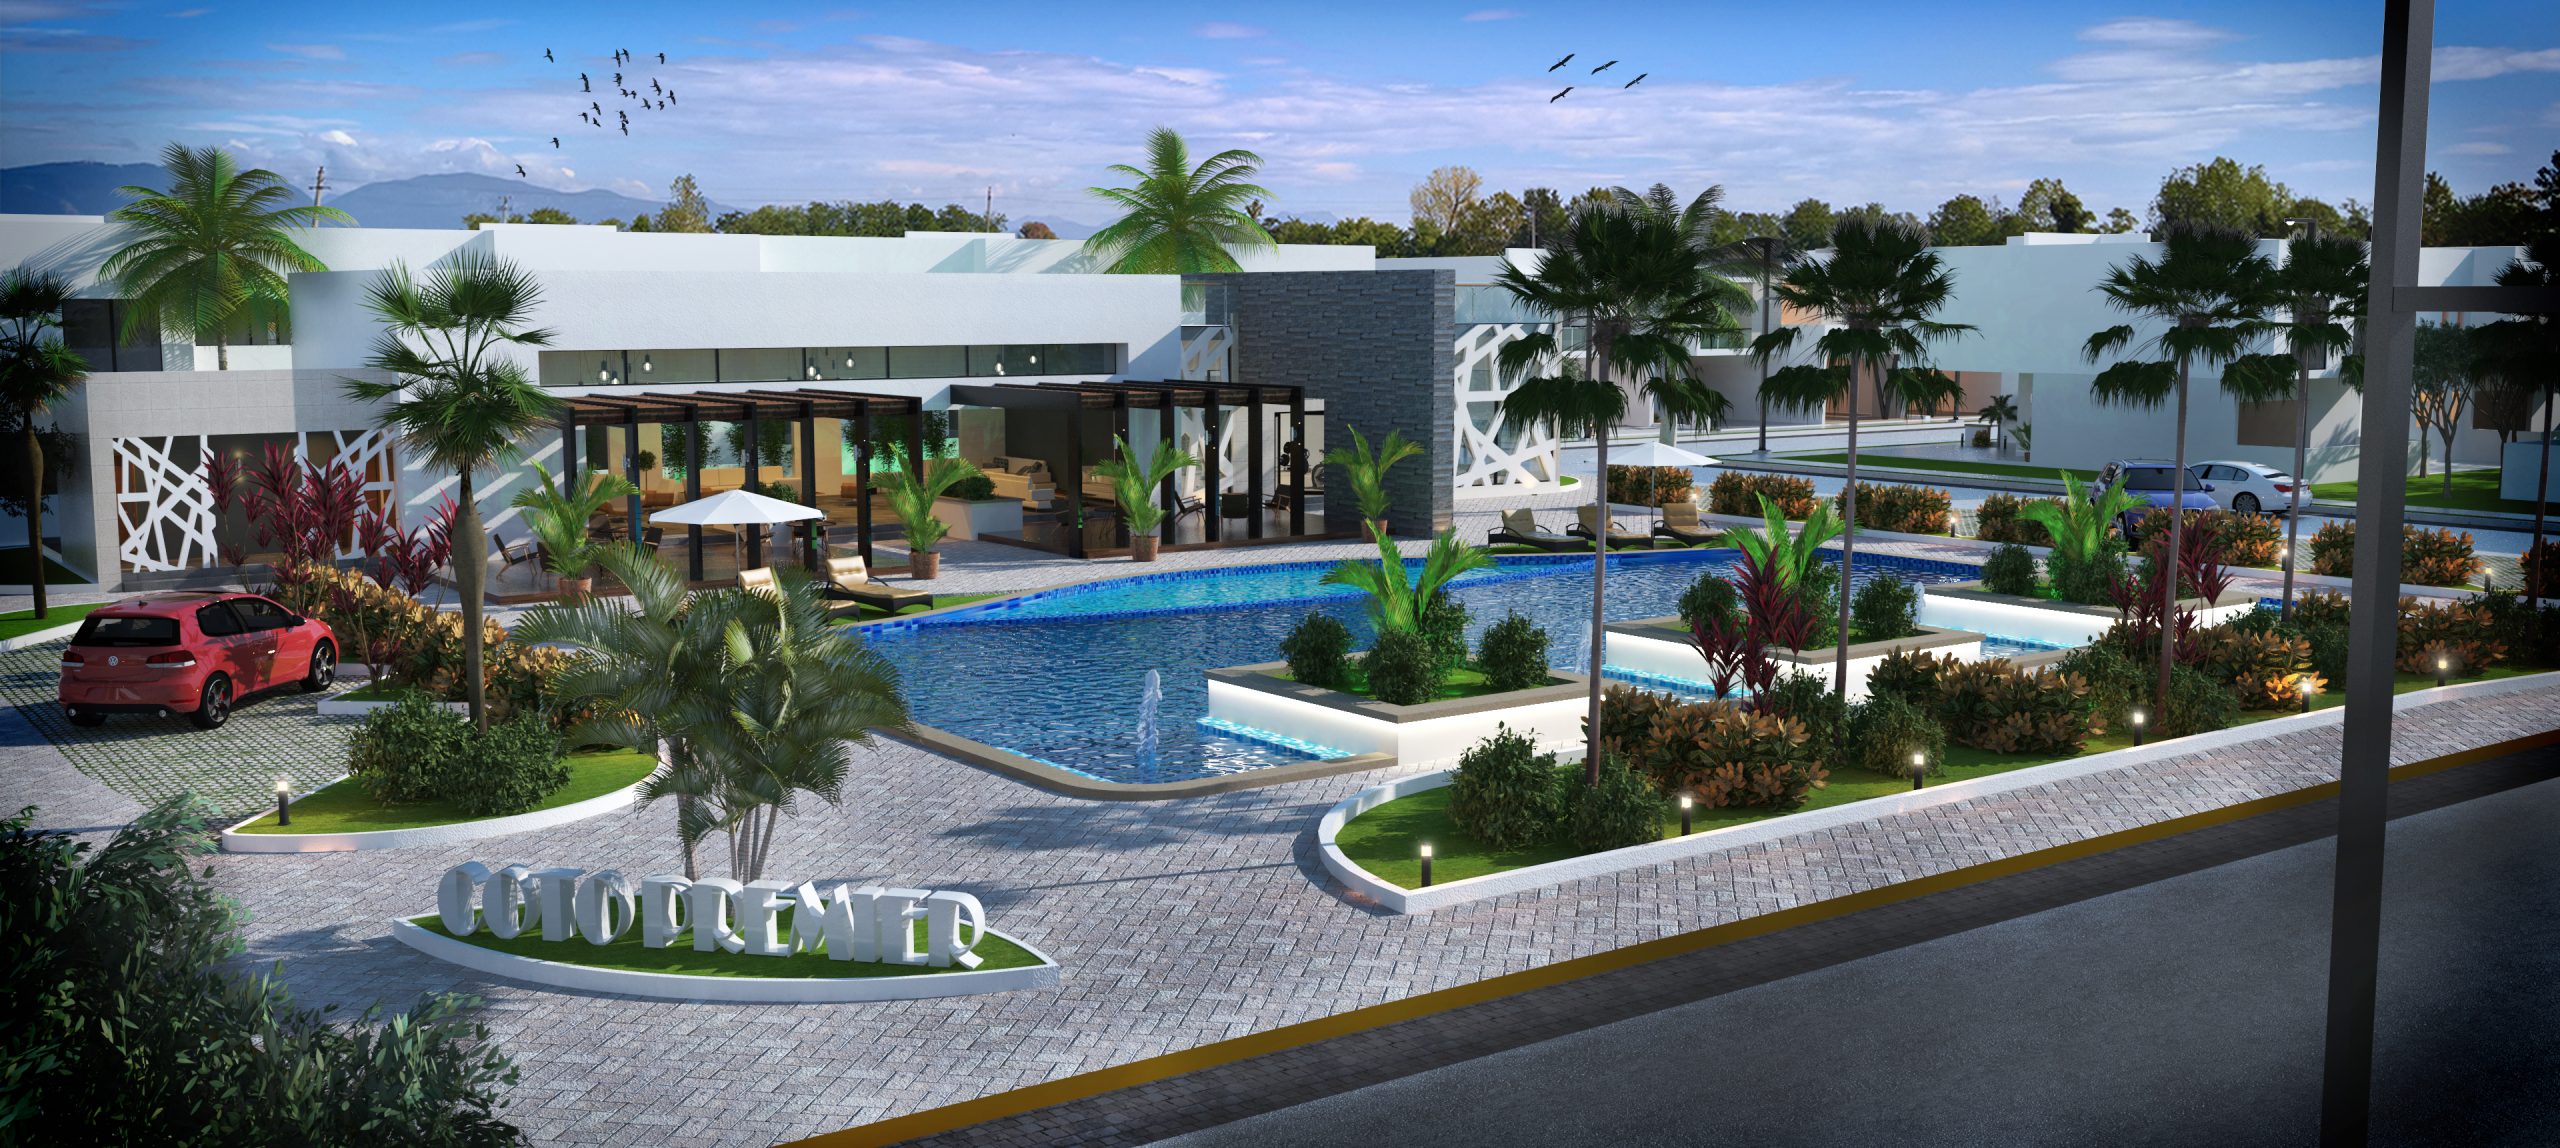 Coto Premier Residencial Mazatlán - Casas en Venta de 3 y 4 Recámaras